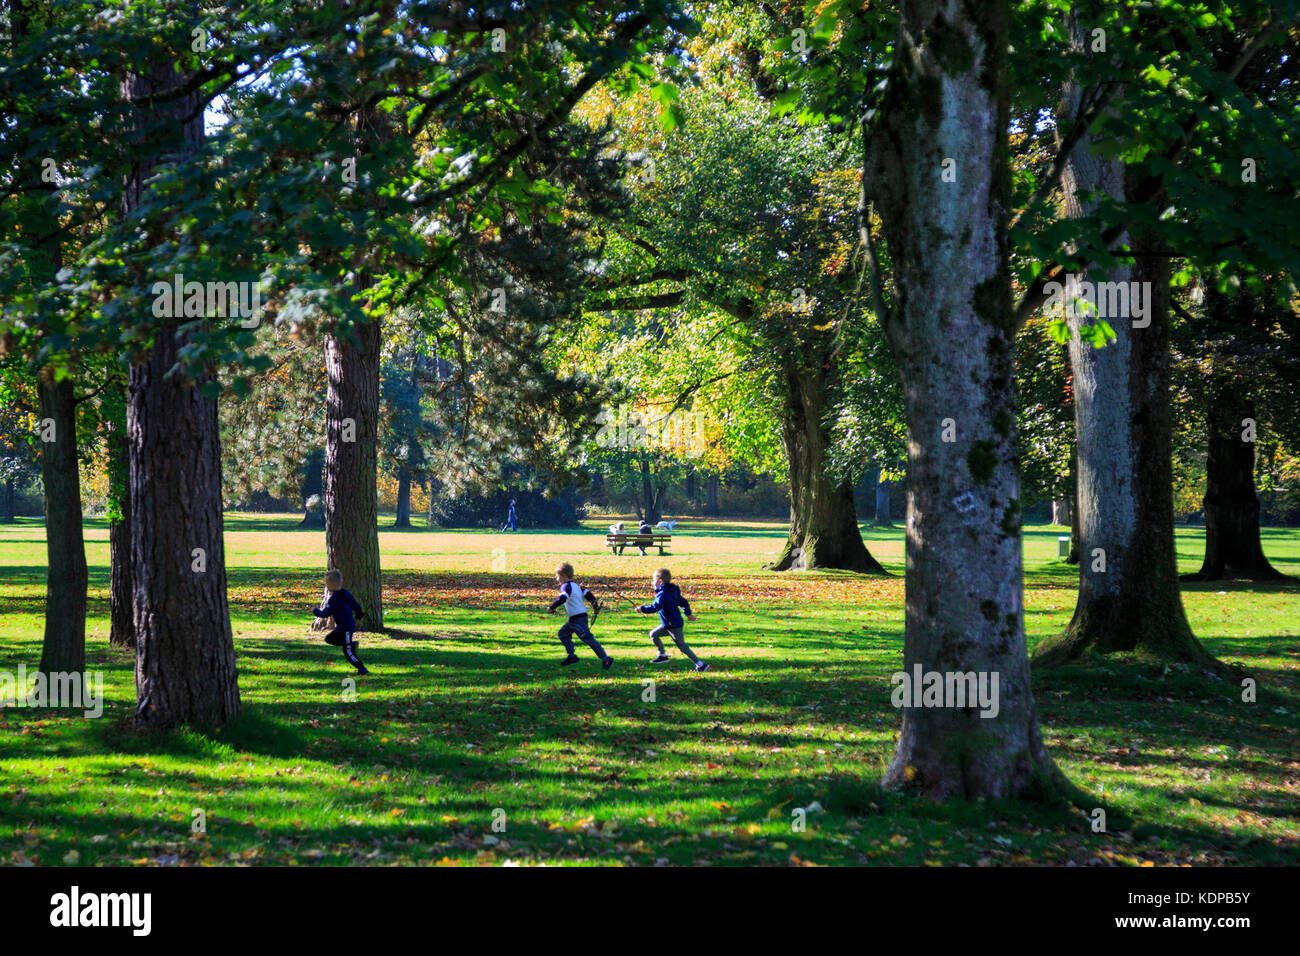 Children playing in a public park in Mülheim an der Ruhr, Germany Stock Photo